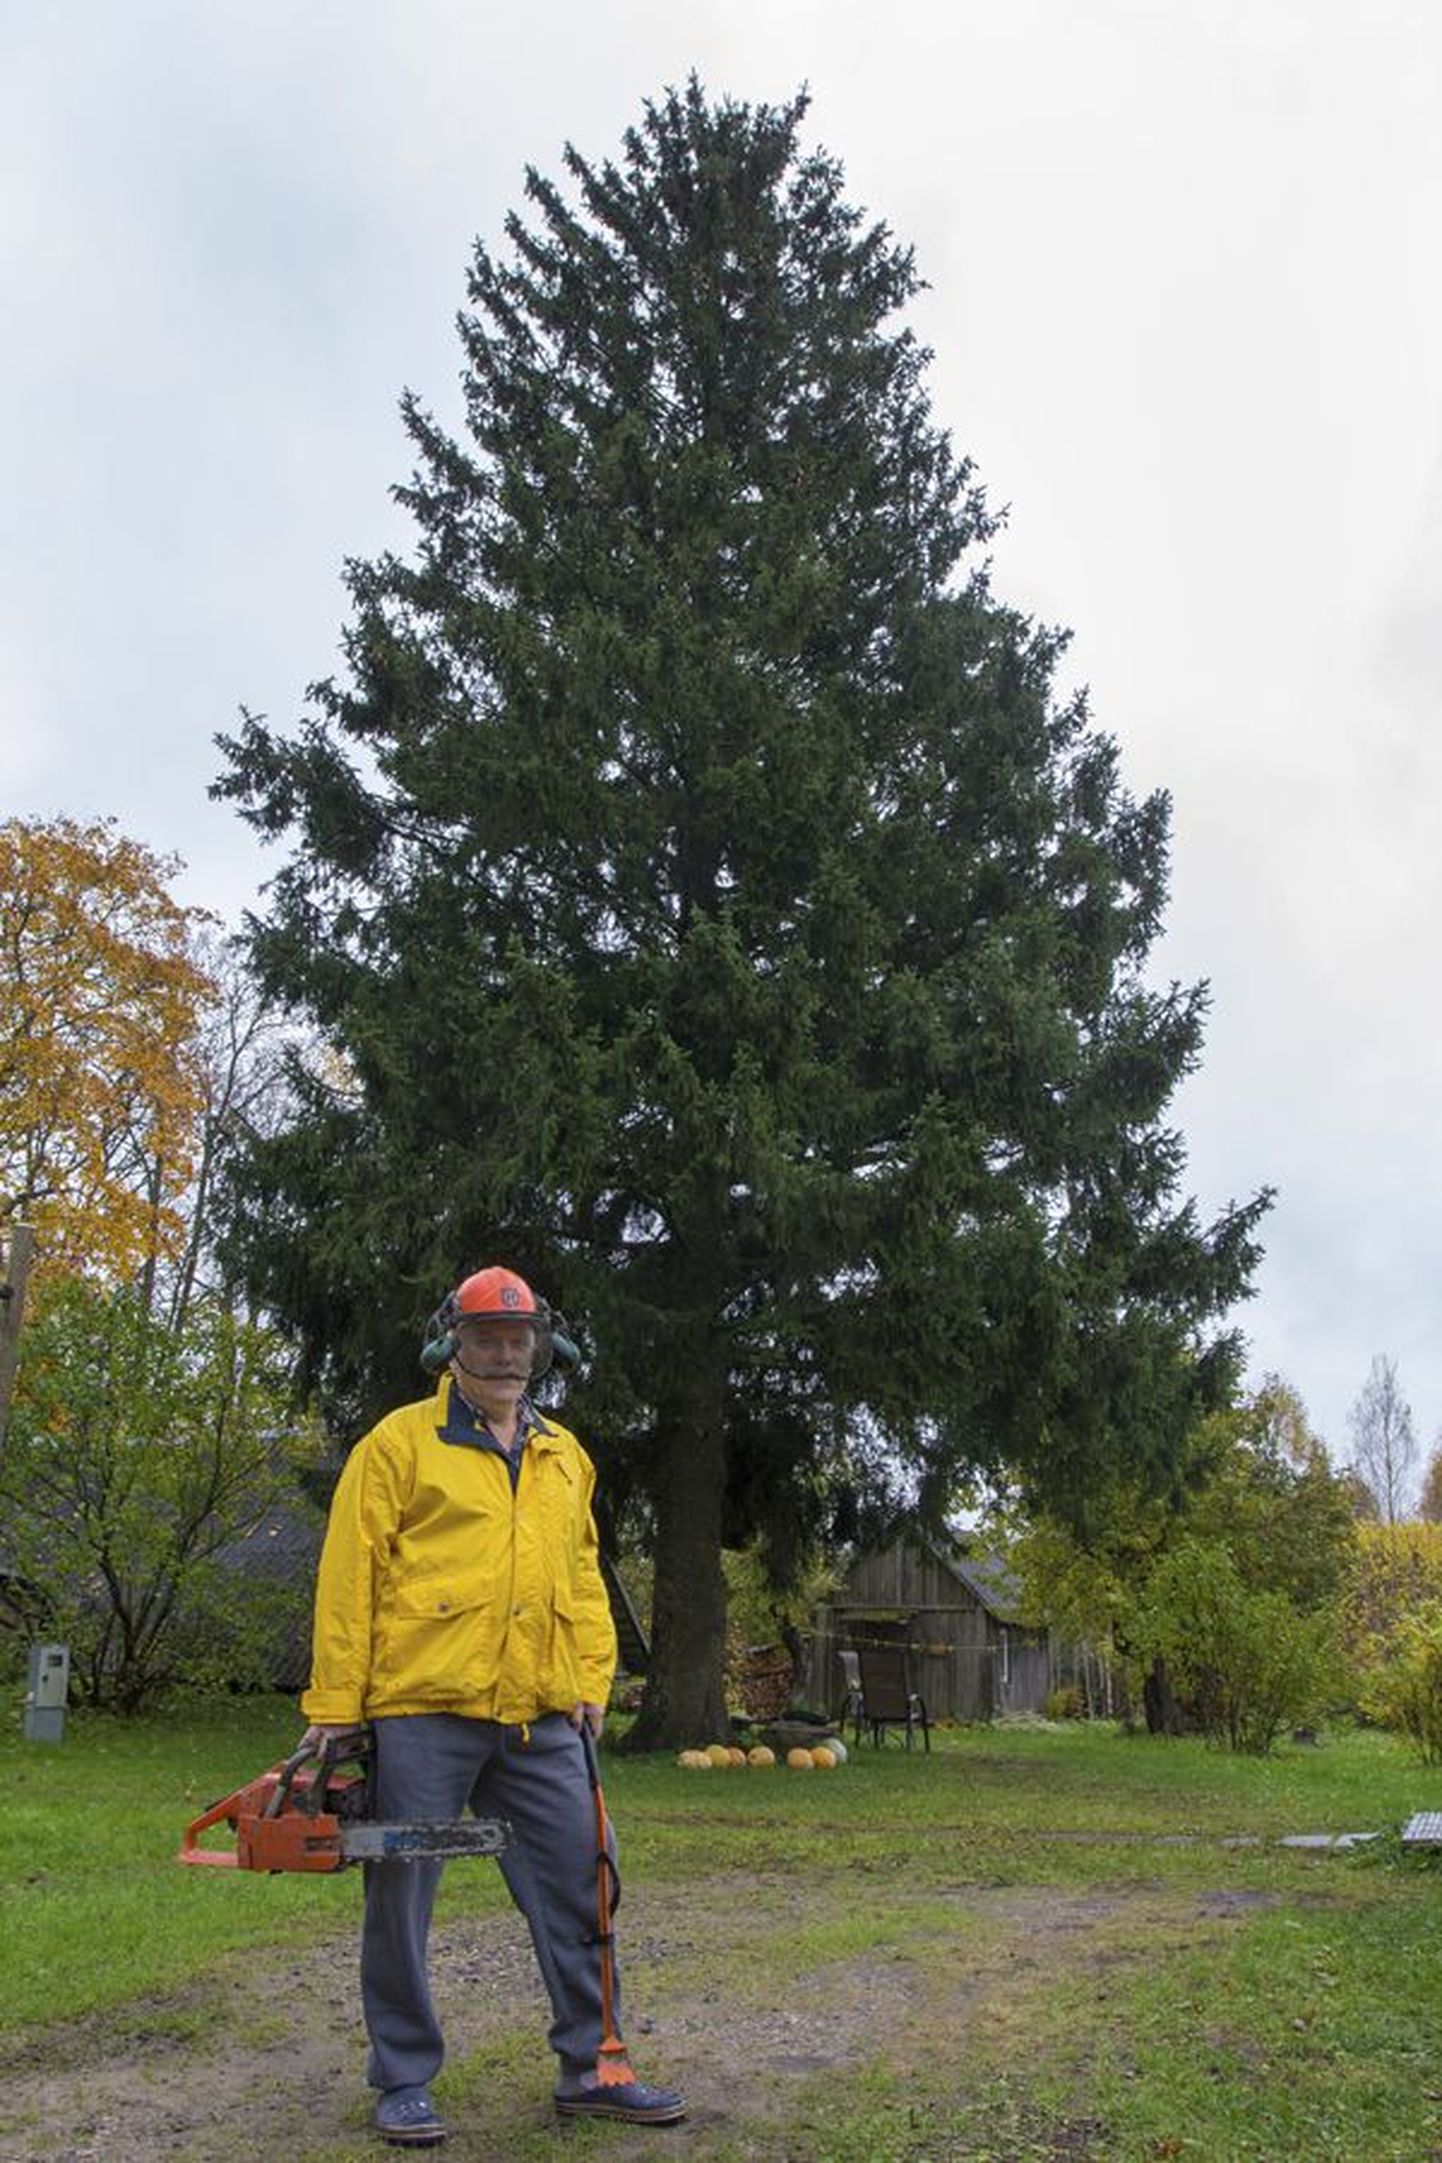 Kuuse omanik Lembit Lahesalu on puude langetamisega tuttav. Ta tähendas, et kui vaja, võib ta ka ise kuuse maha võtta ja linna viia.